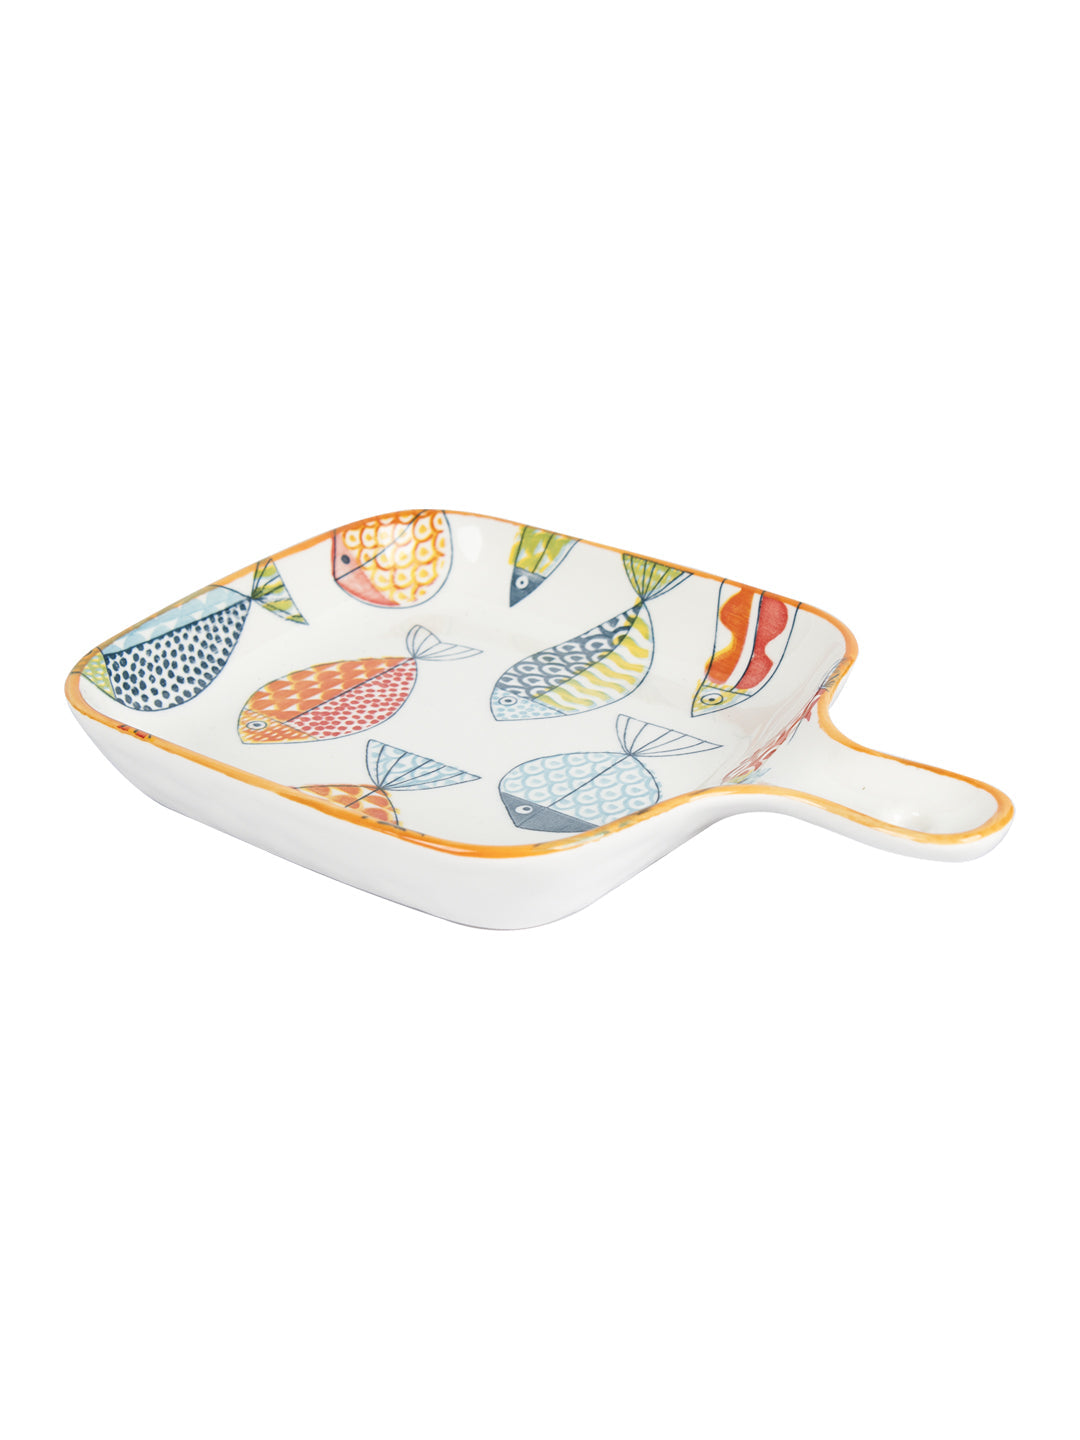 VON CASA Round Ceramic Serveware Plates - Multicolor